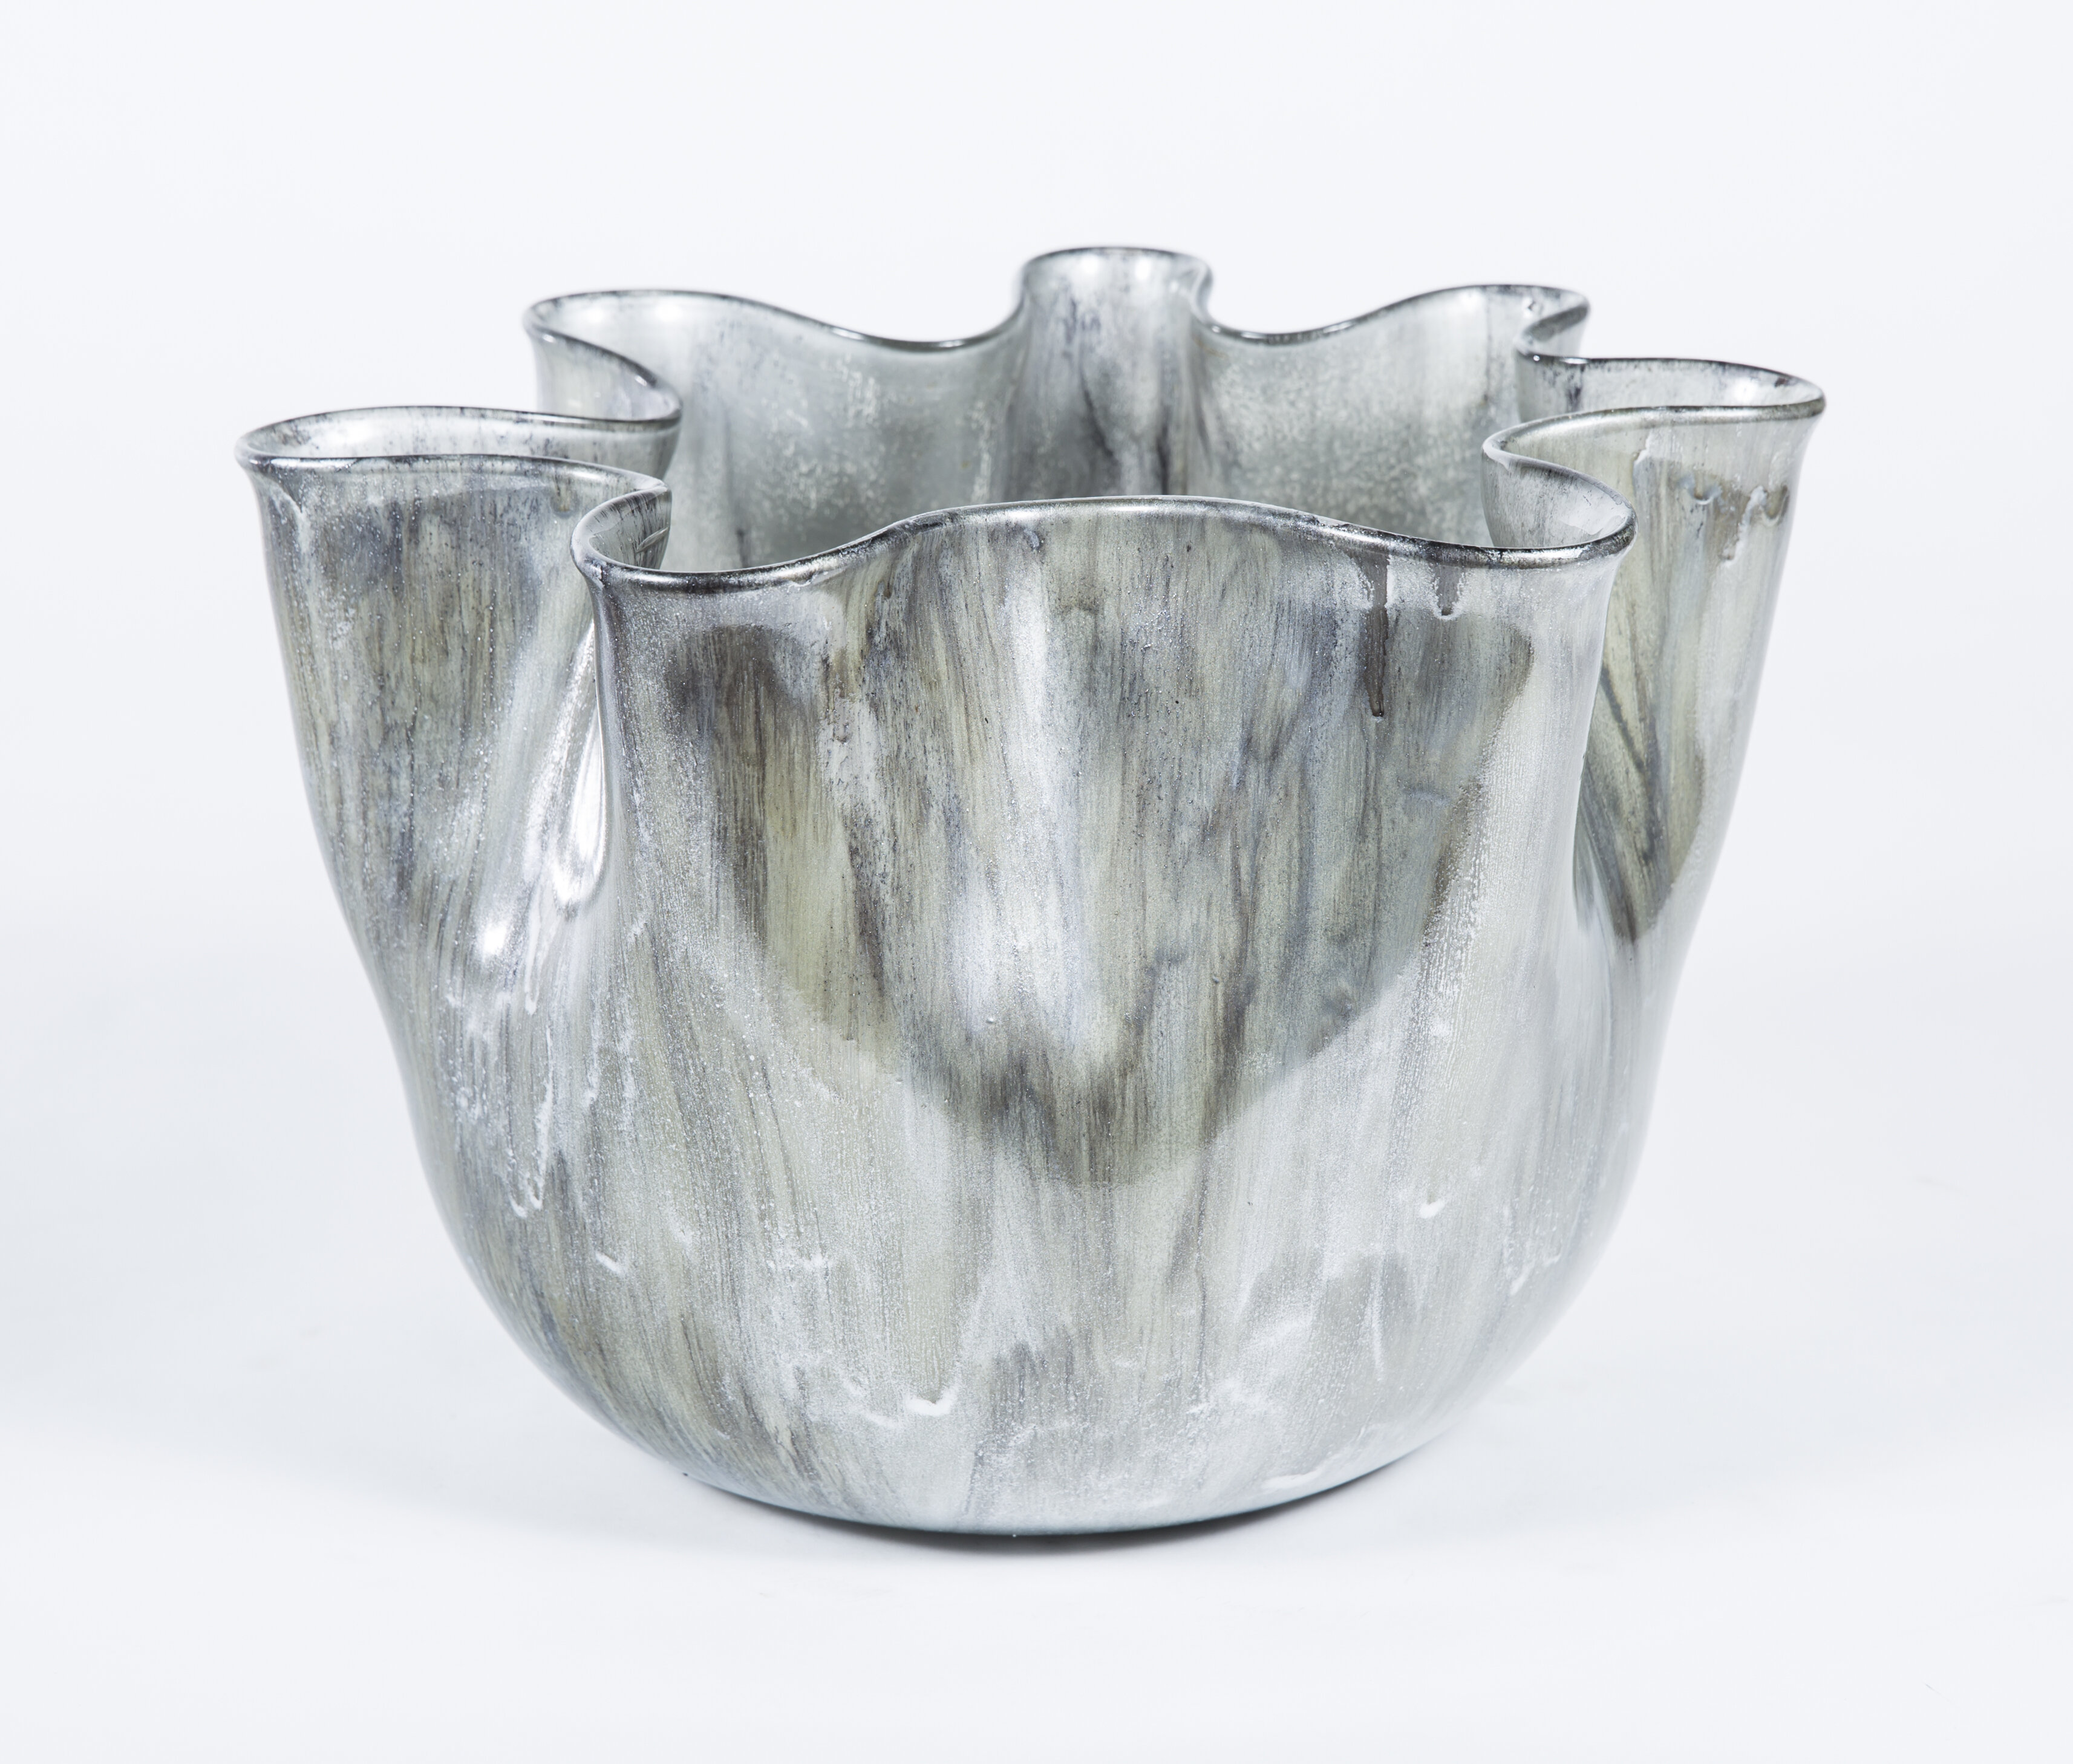 https://assets.wfcdn.com/im/97005212/compr-r85/6970/69707272/ruffle-handmade-glass-decorative-bowl.jpg